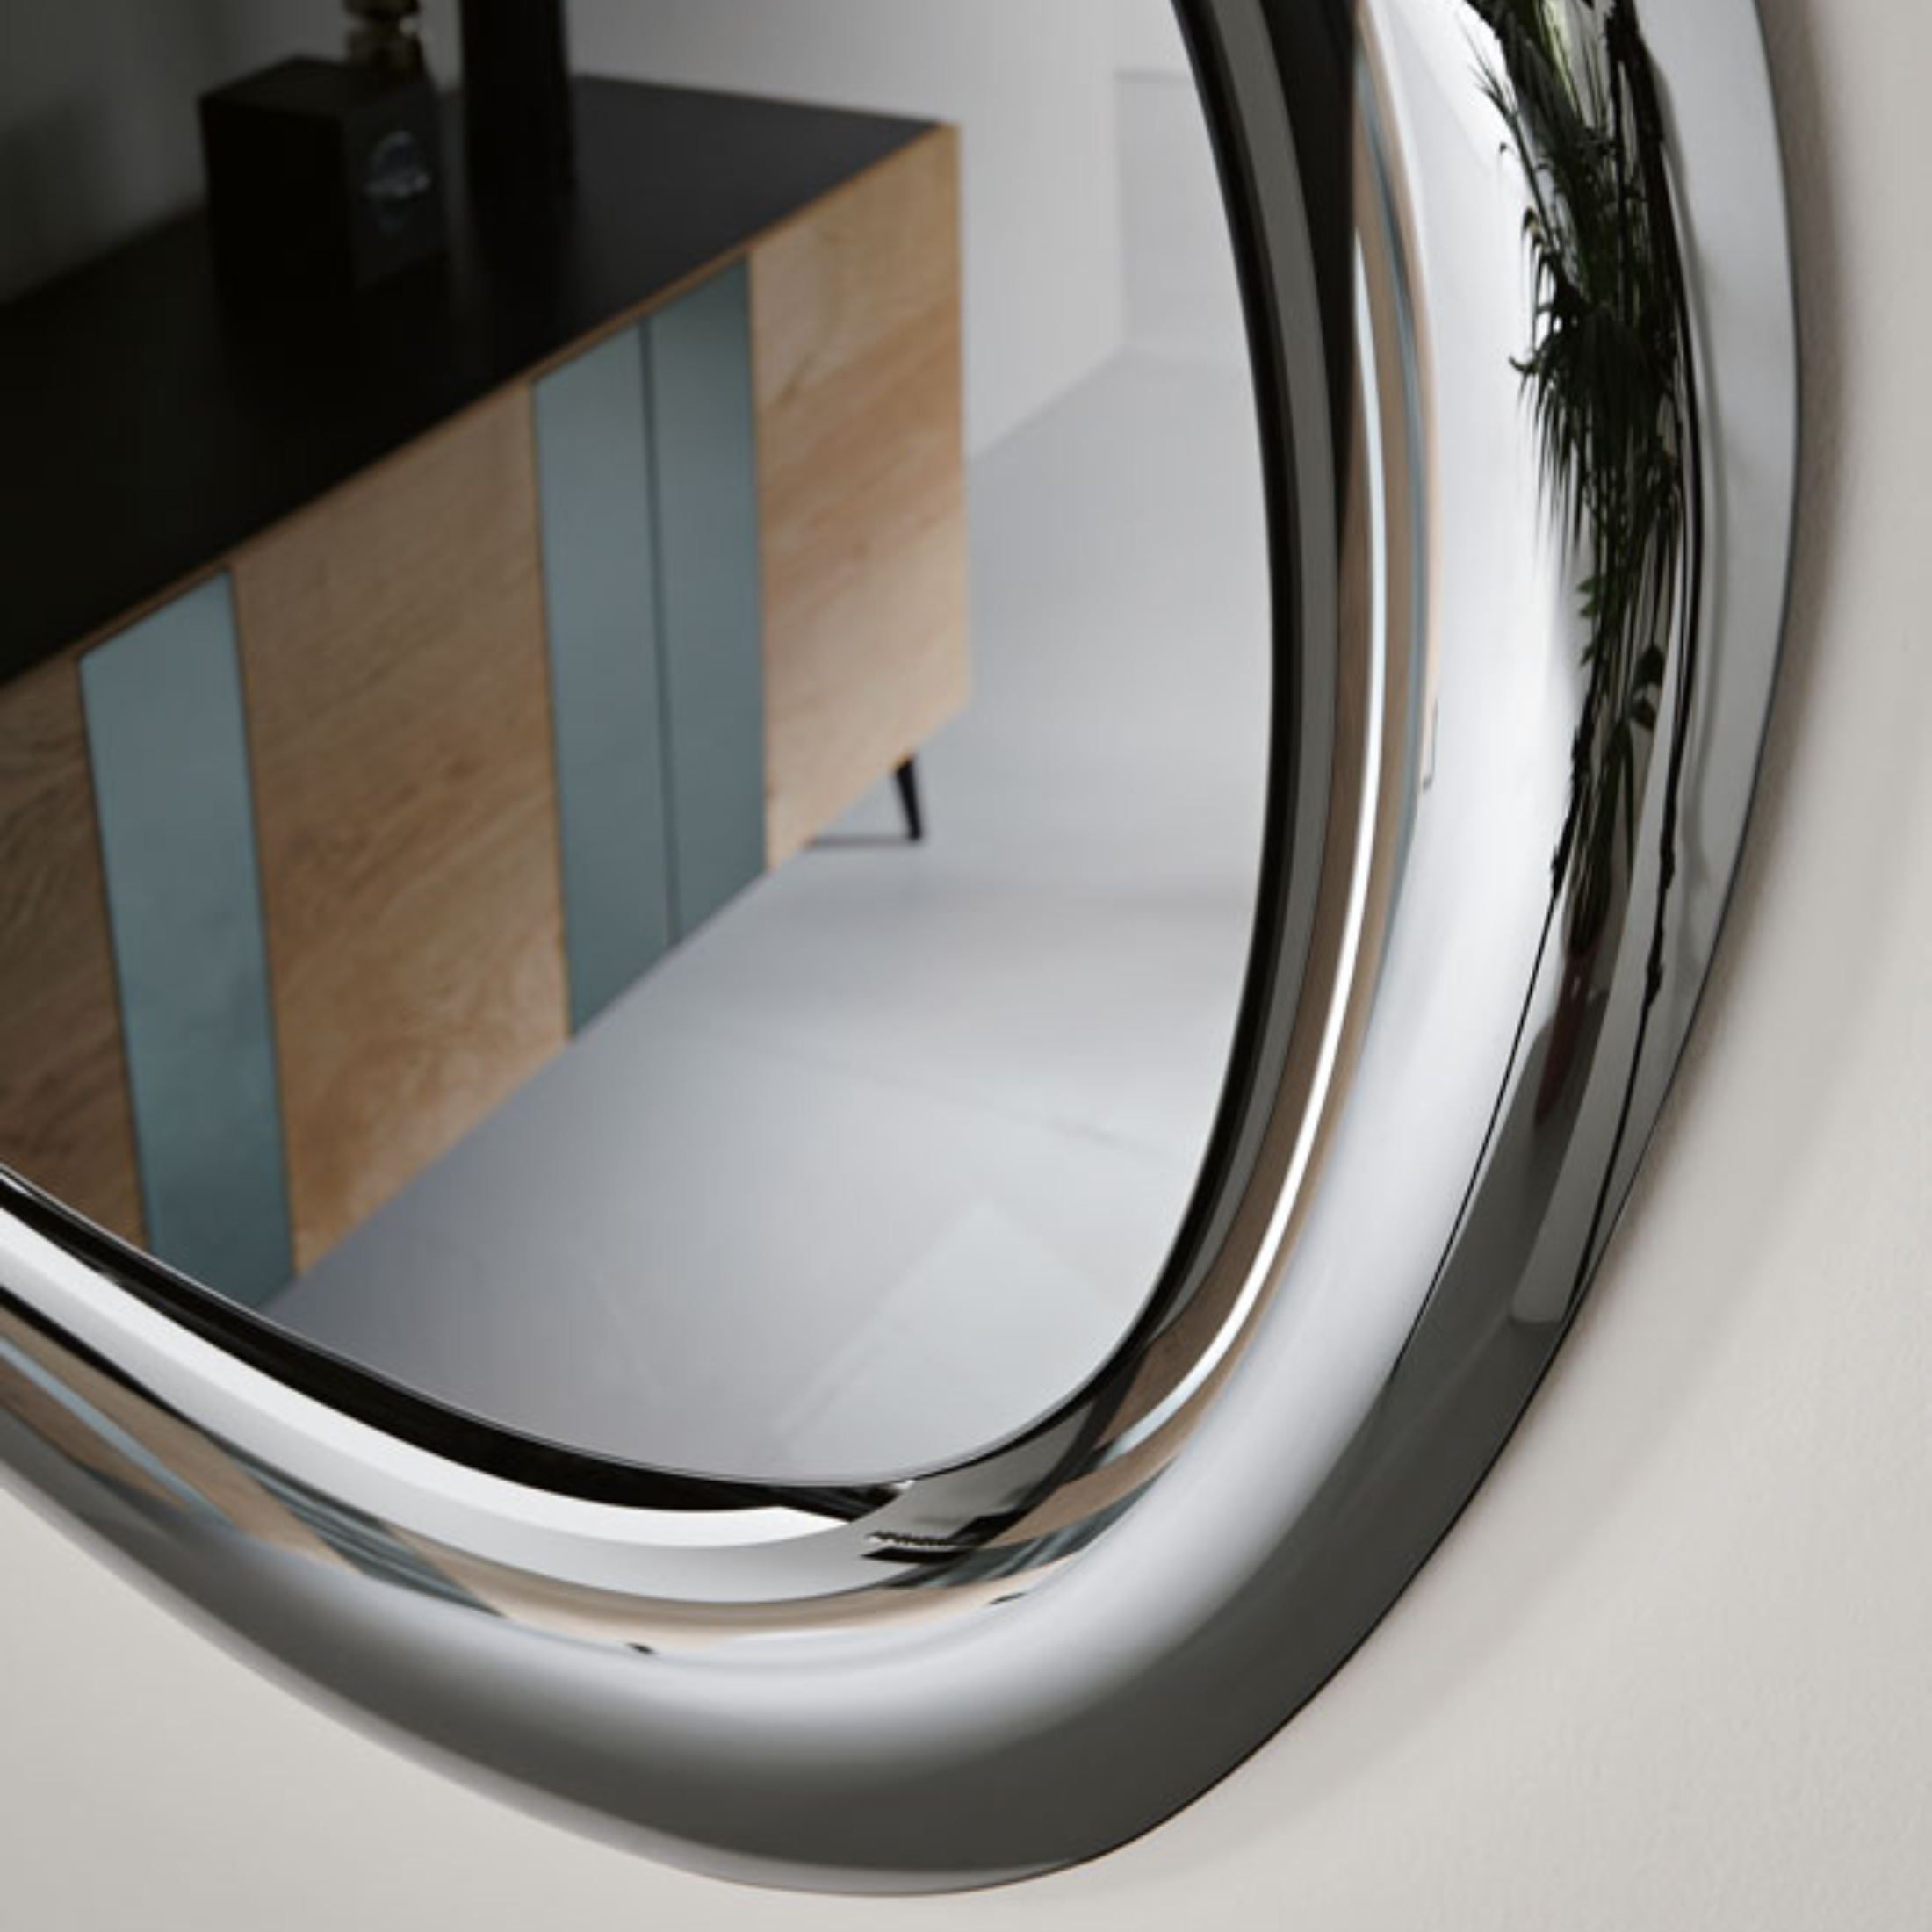 Specchio da parete "Move" con cornice curva moderna